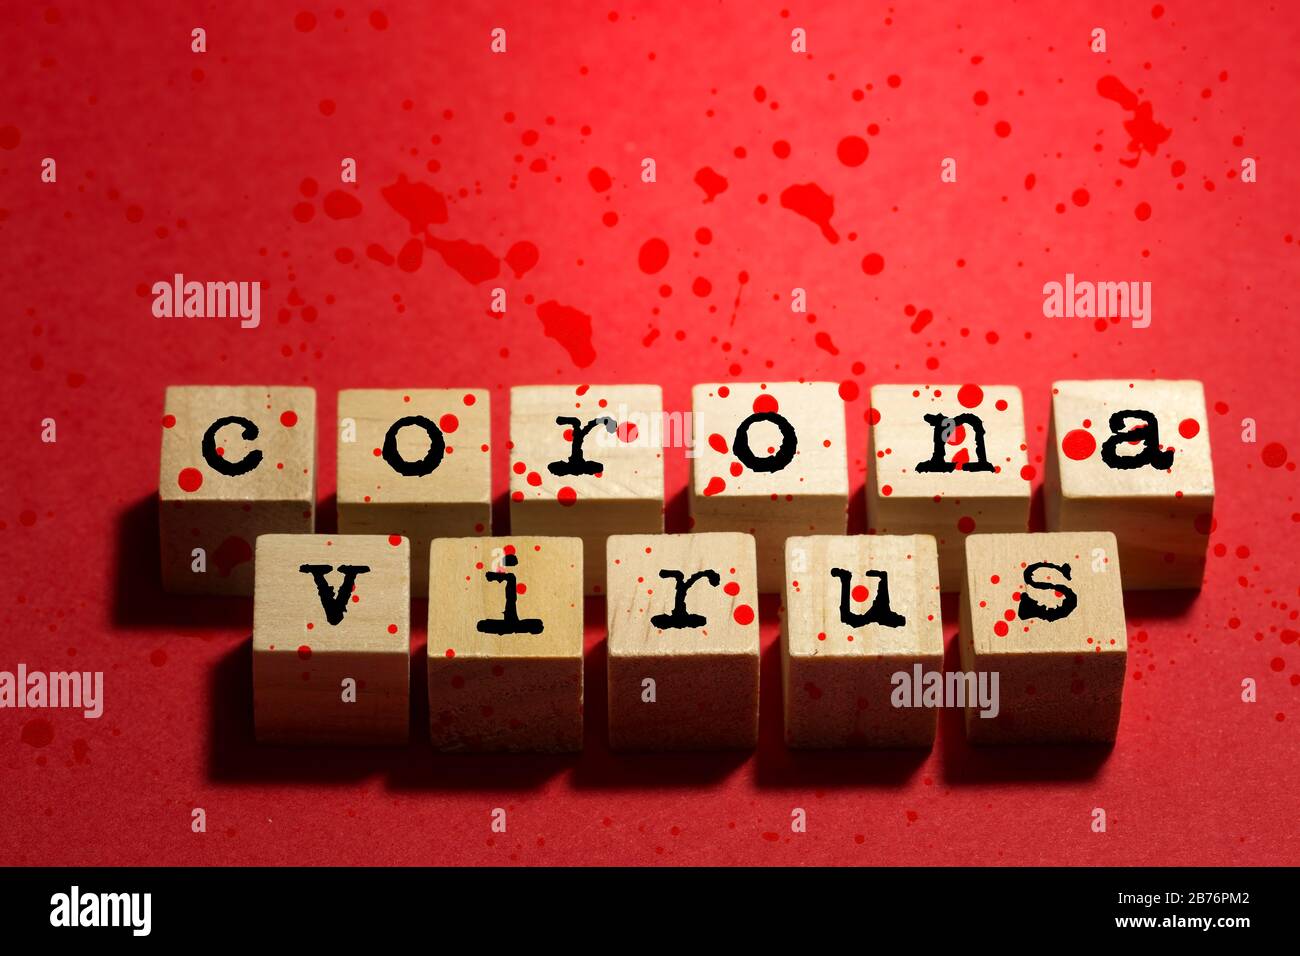 Le virus Corona est écrit sur des cubes en bois avec les taches rouges Banque D'Images